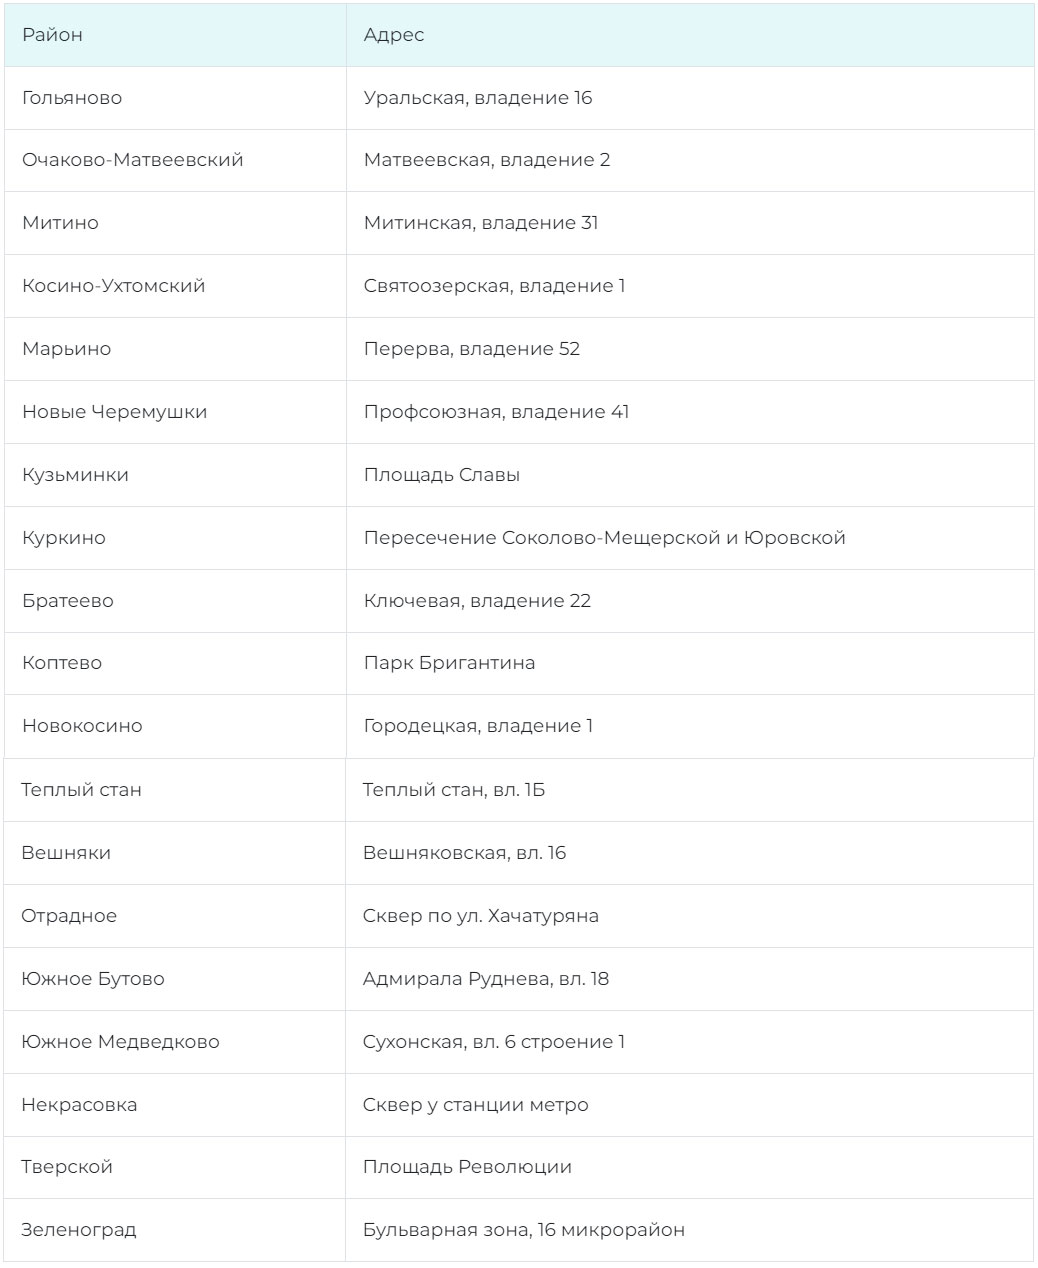 Бесплатные катки в разных районах Москвы